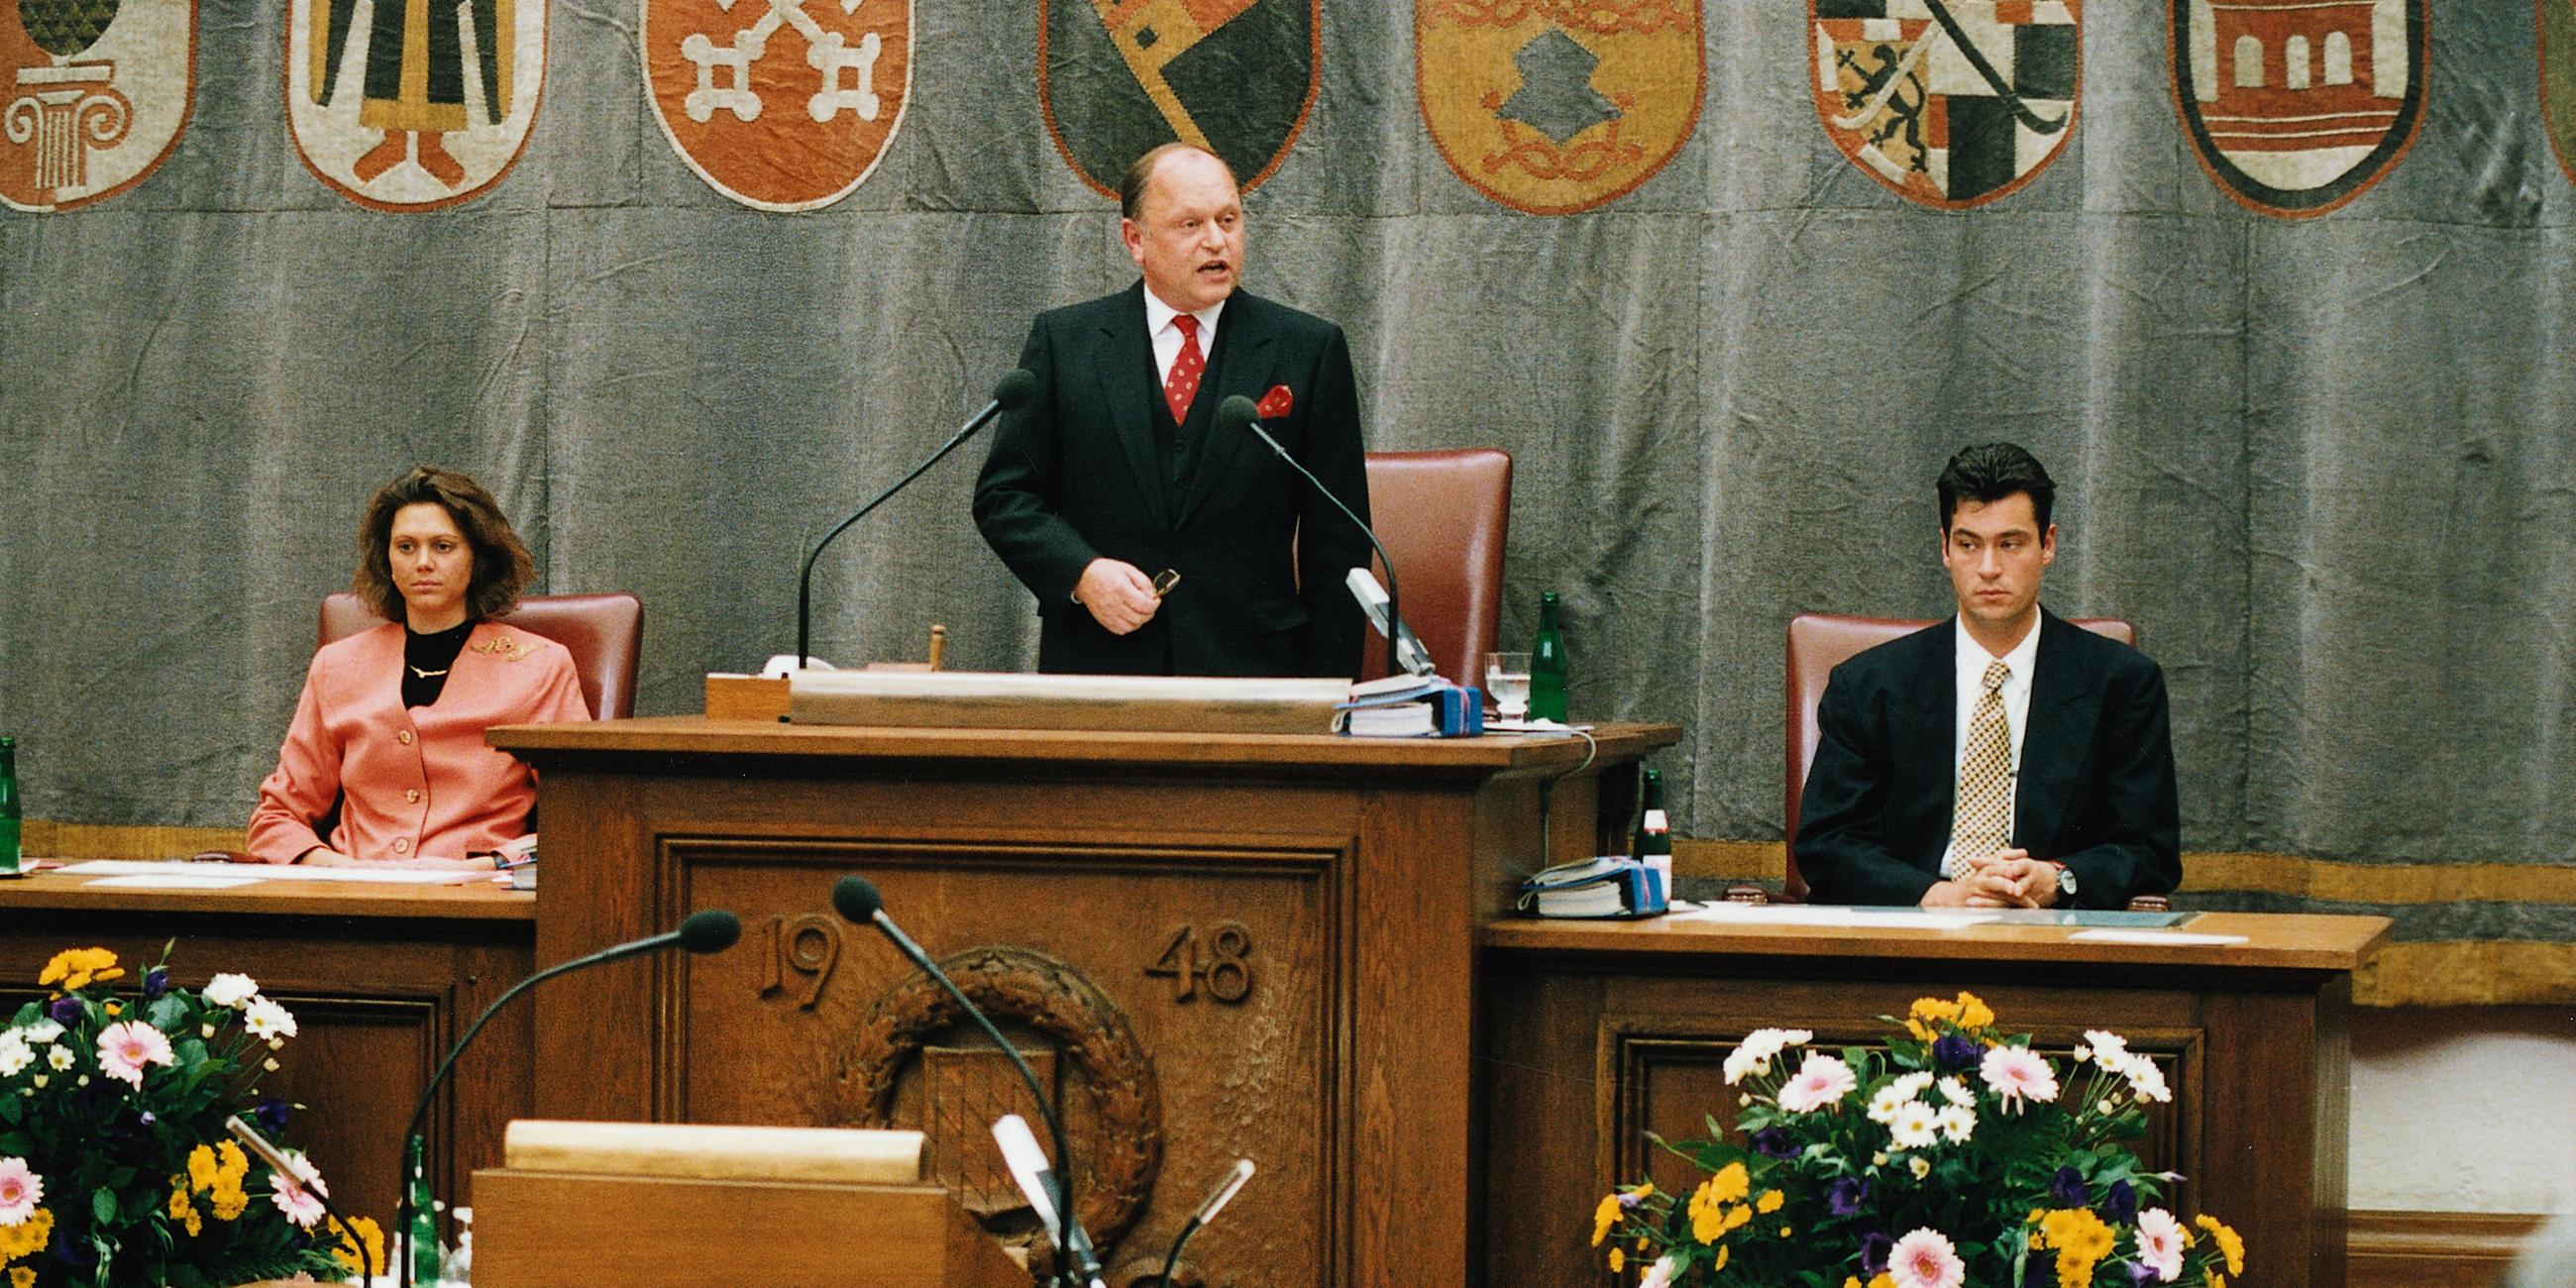 Ilse Aigner, Johann Böhm und Markus Söder (v.l.) bei der konstituierenden Sitzung des bayerischen Landtags im Jahre 1994.